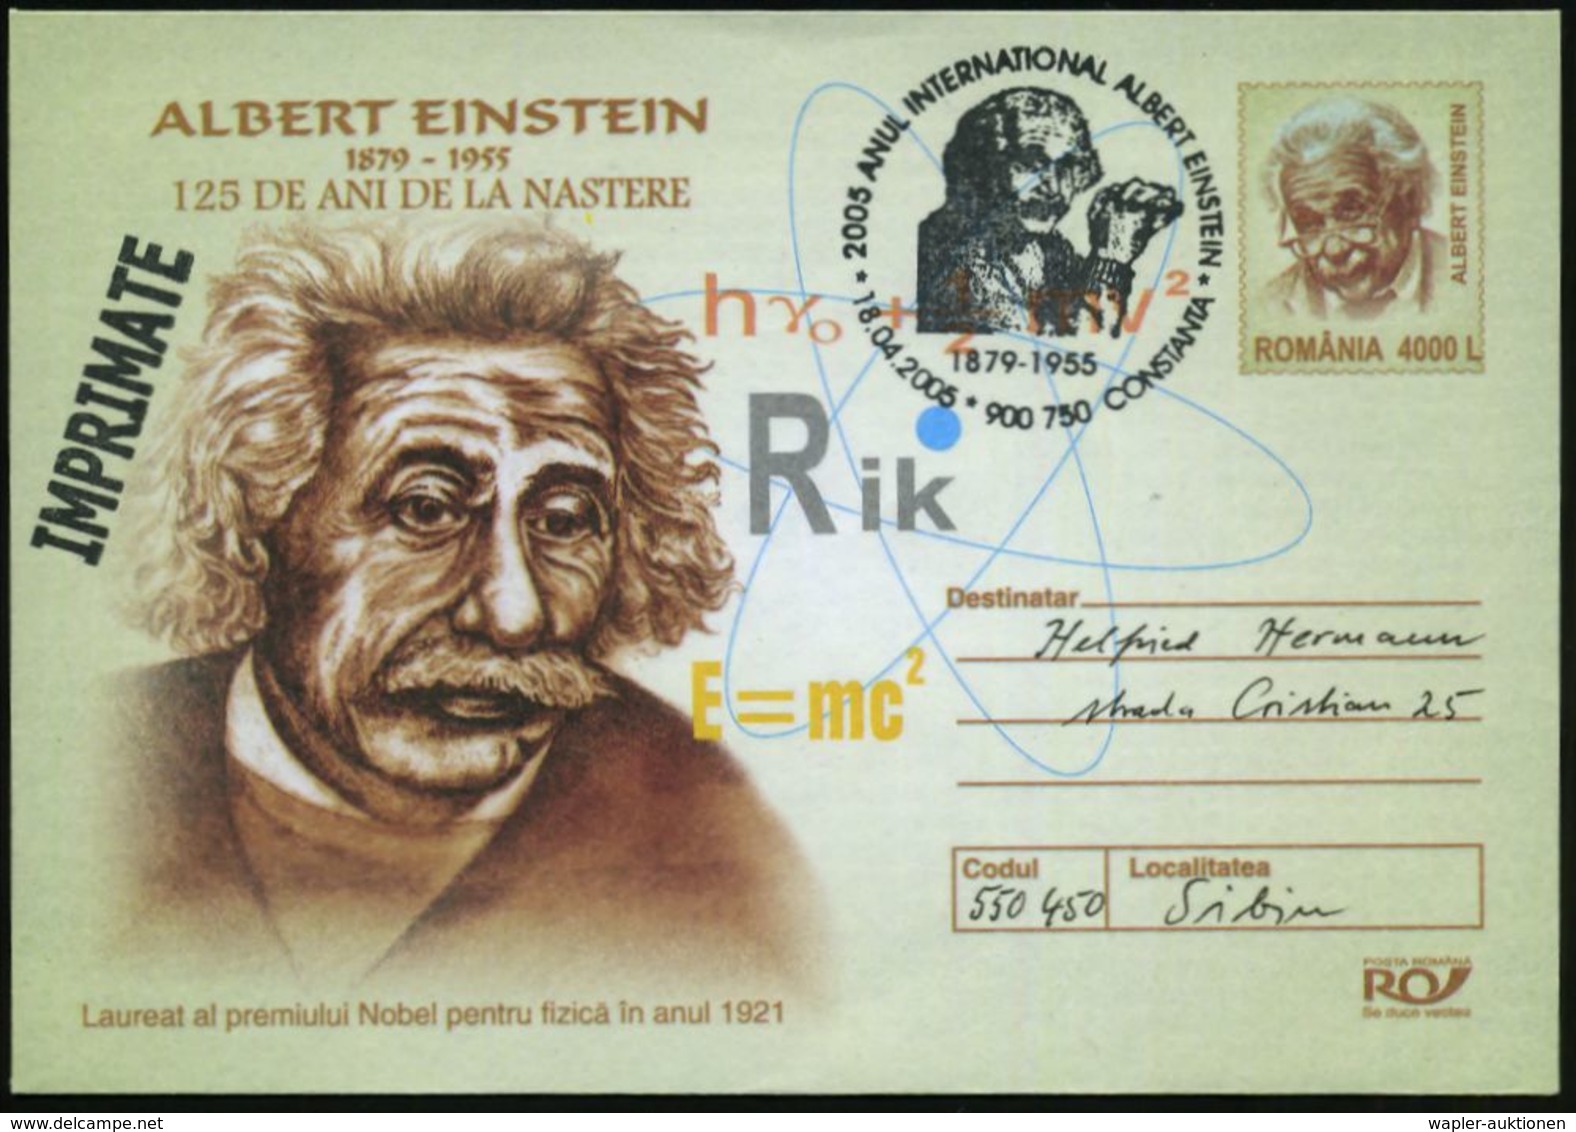 RUMÄNIEN 2005 (18.4.) SSt.: 900 750 CONSTANTA/..ANUL INTERNAT. ALBERT EINSTEIN (Brustbild Alter Einstein) Motivähnl. Son - Prix Nobel